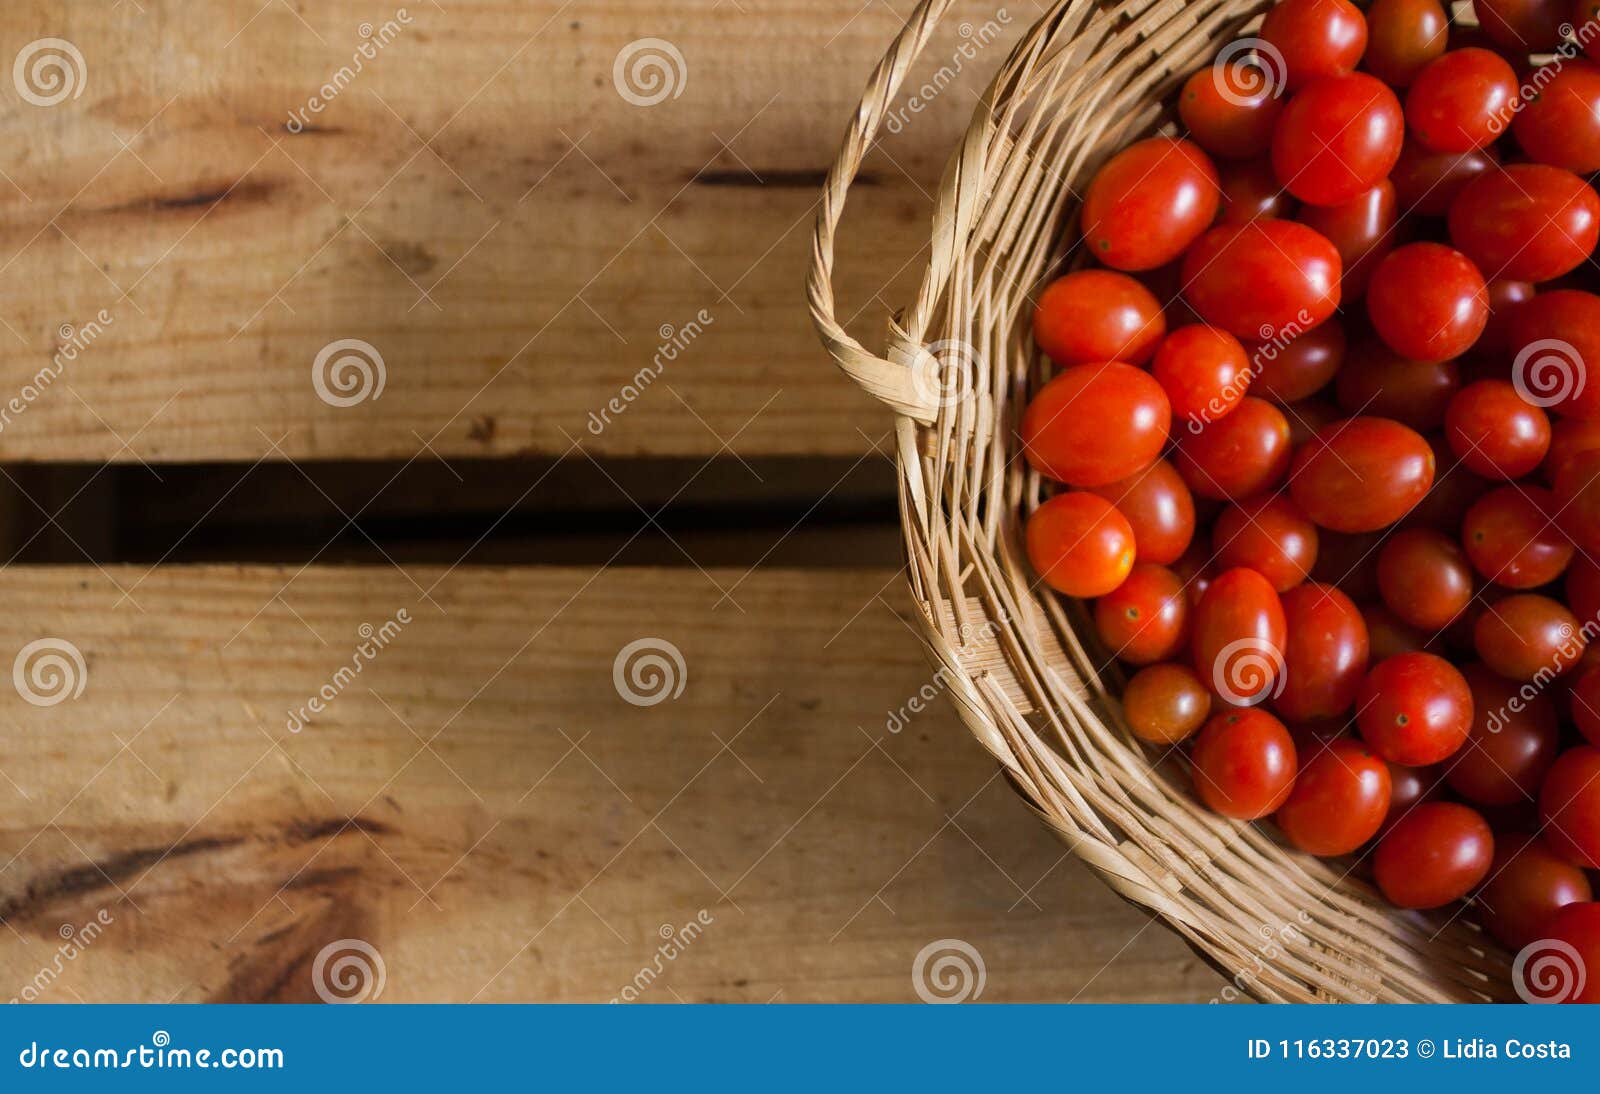 tomates-cereja vermelhos pequenos dentro de cesta caixote de madeira em estilo rÃÂºstico, foco seletivo